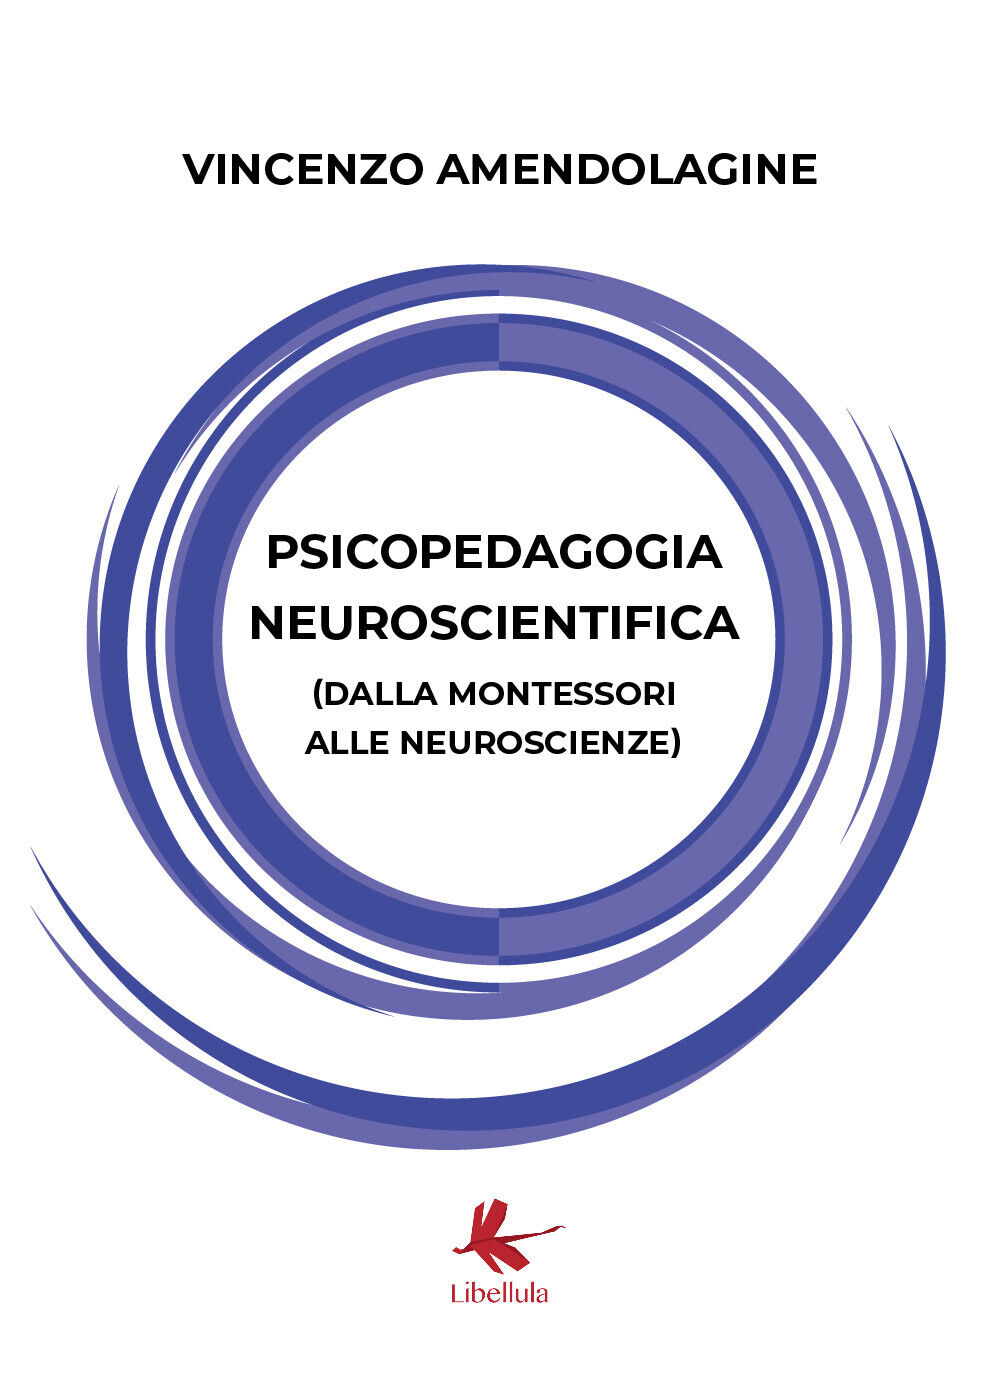 Psicopedagogia neuroscientifica - Vincenzo Amendolagine,  2020,  Libellula Edizi